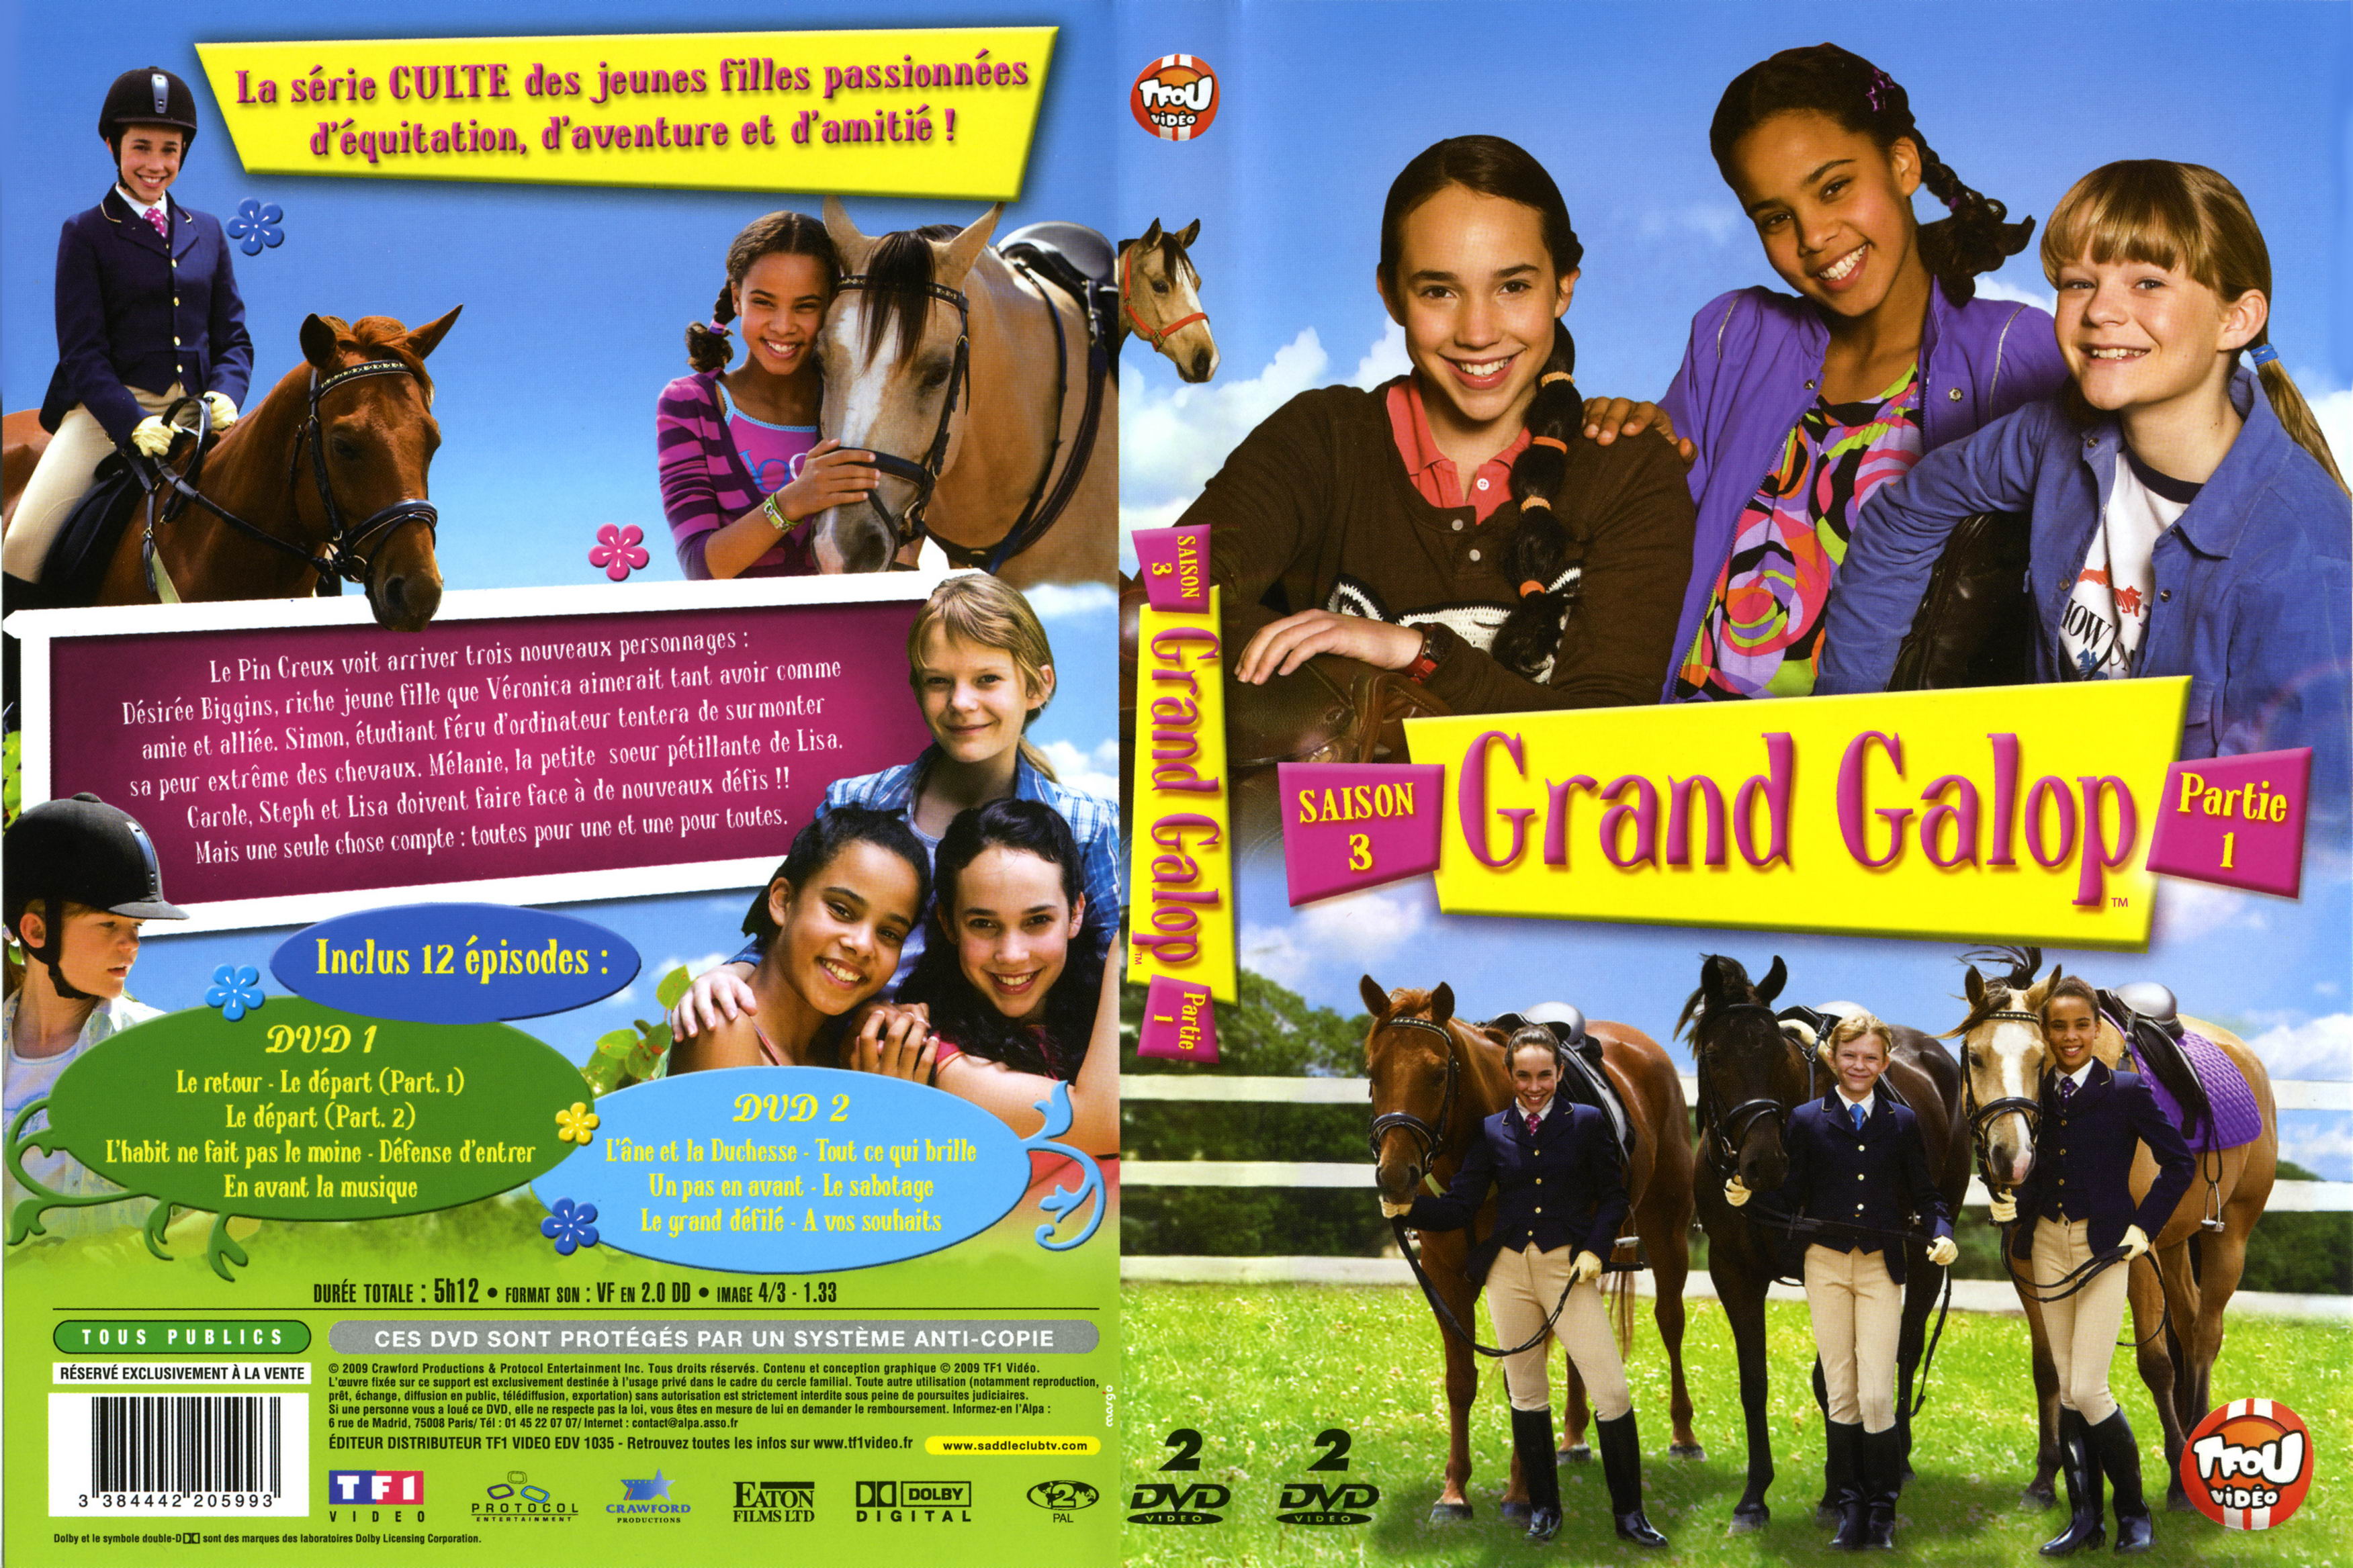 Jaquette DVD Grand galop Saison 3 Partie 1